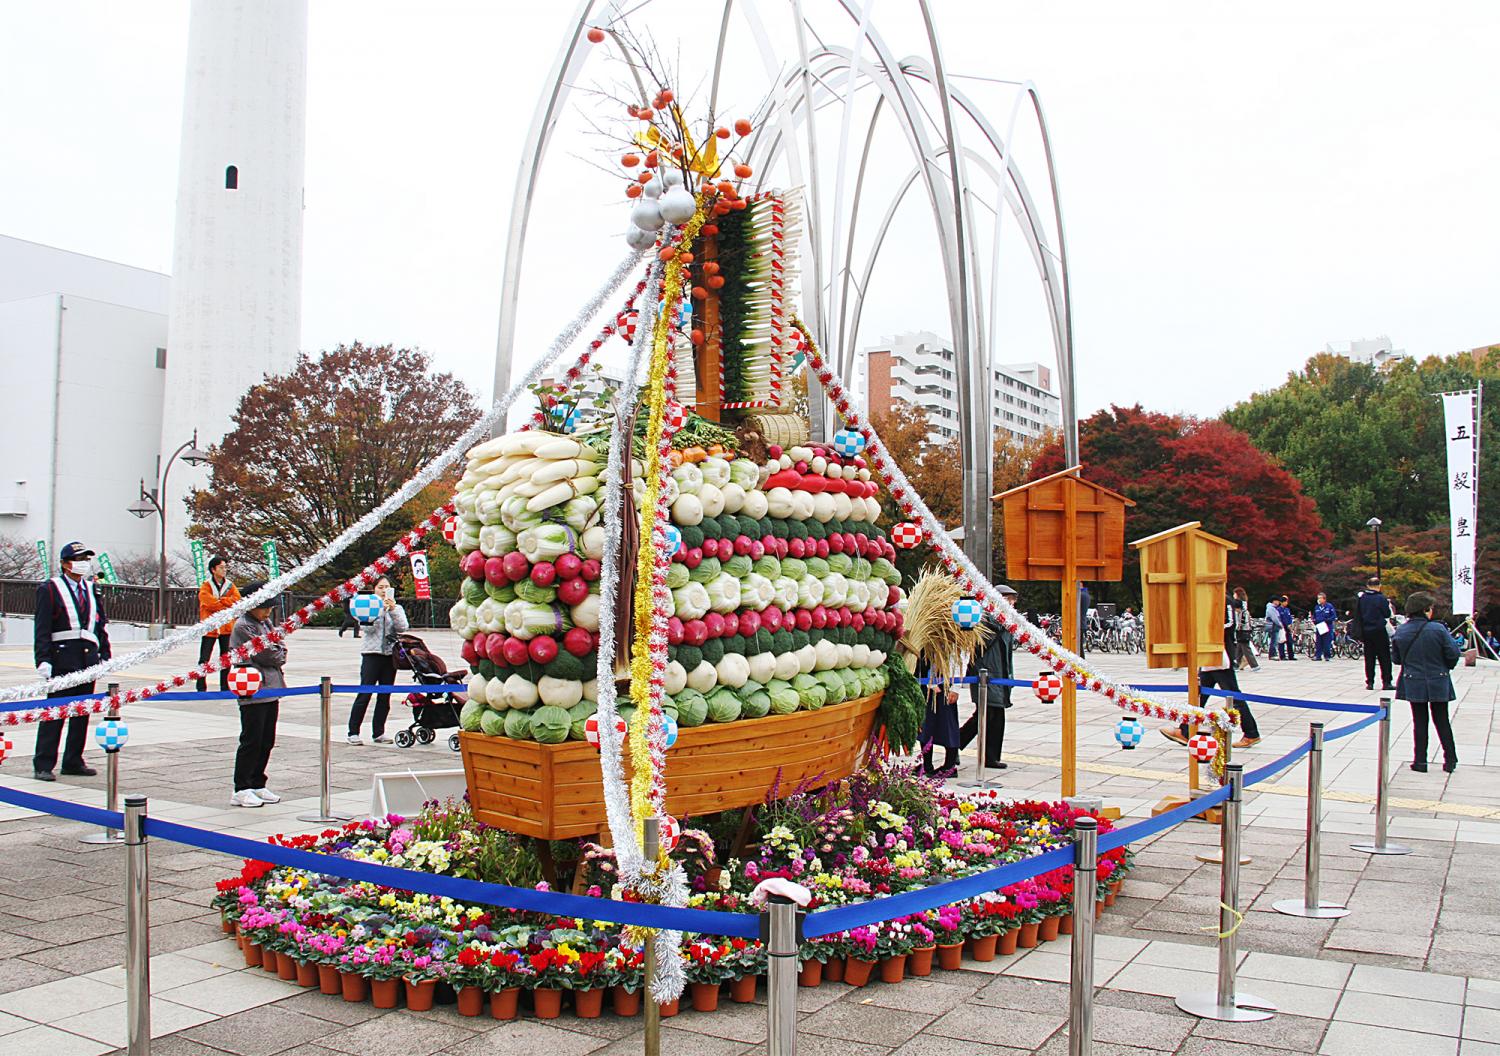 開催周年でパワーアップ Ja東京あおば農業祭 で収穫の秋を楽しもう 特集記事 とっておきの練馬